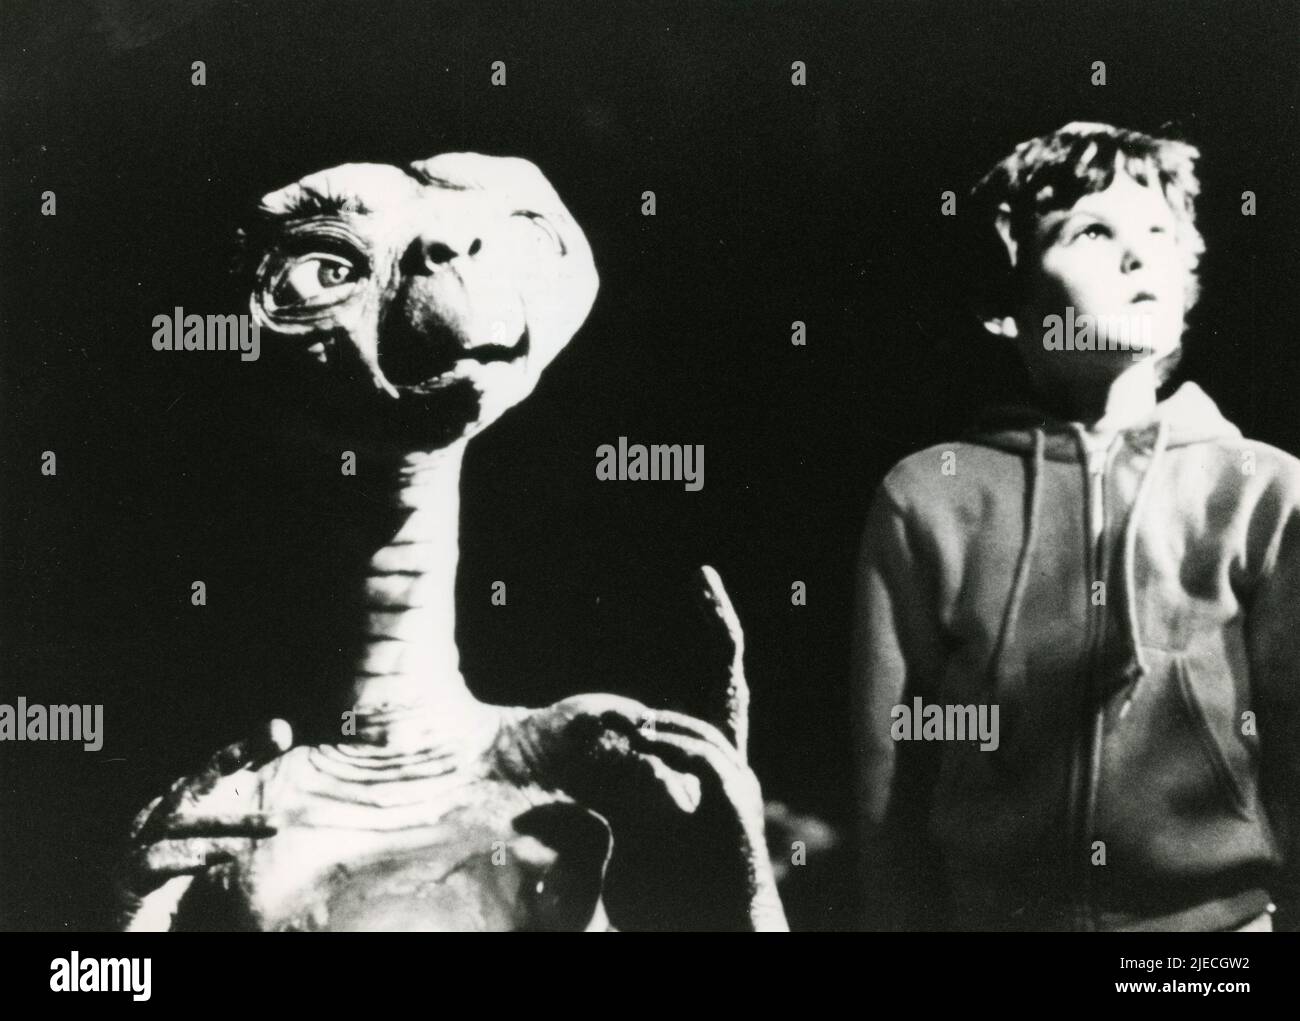 El niño actor estadounidense Henry Thomas en la película E.T. The Extra-Terrestrial, EE.UU. 1982 Foto de stock